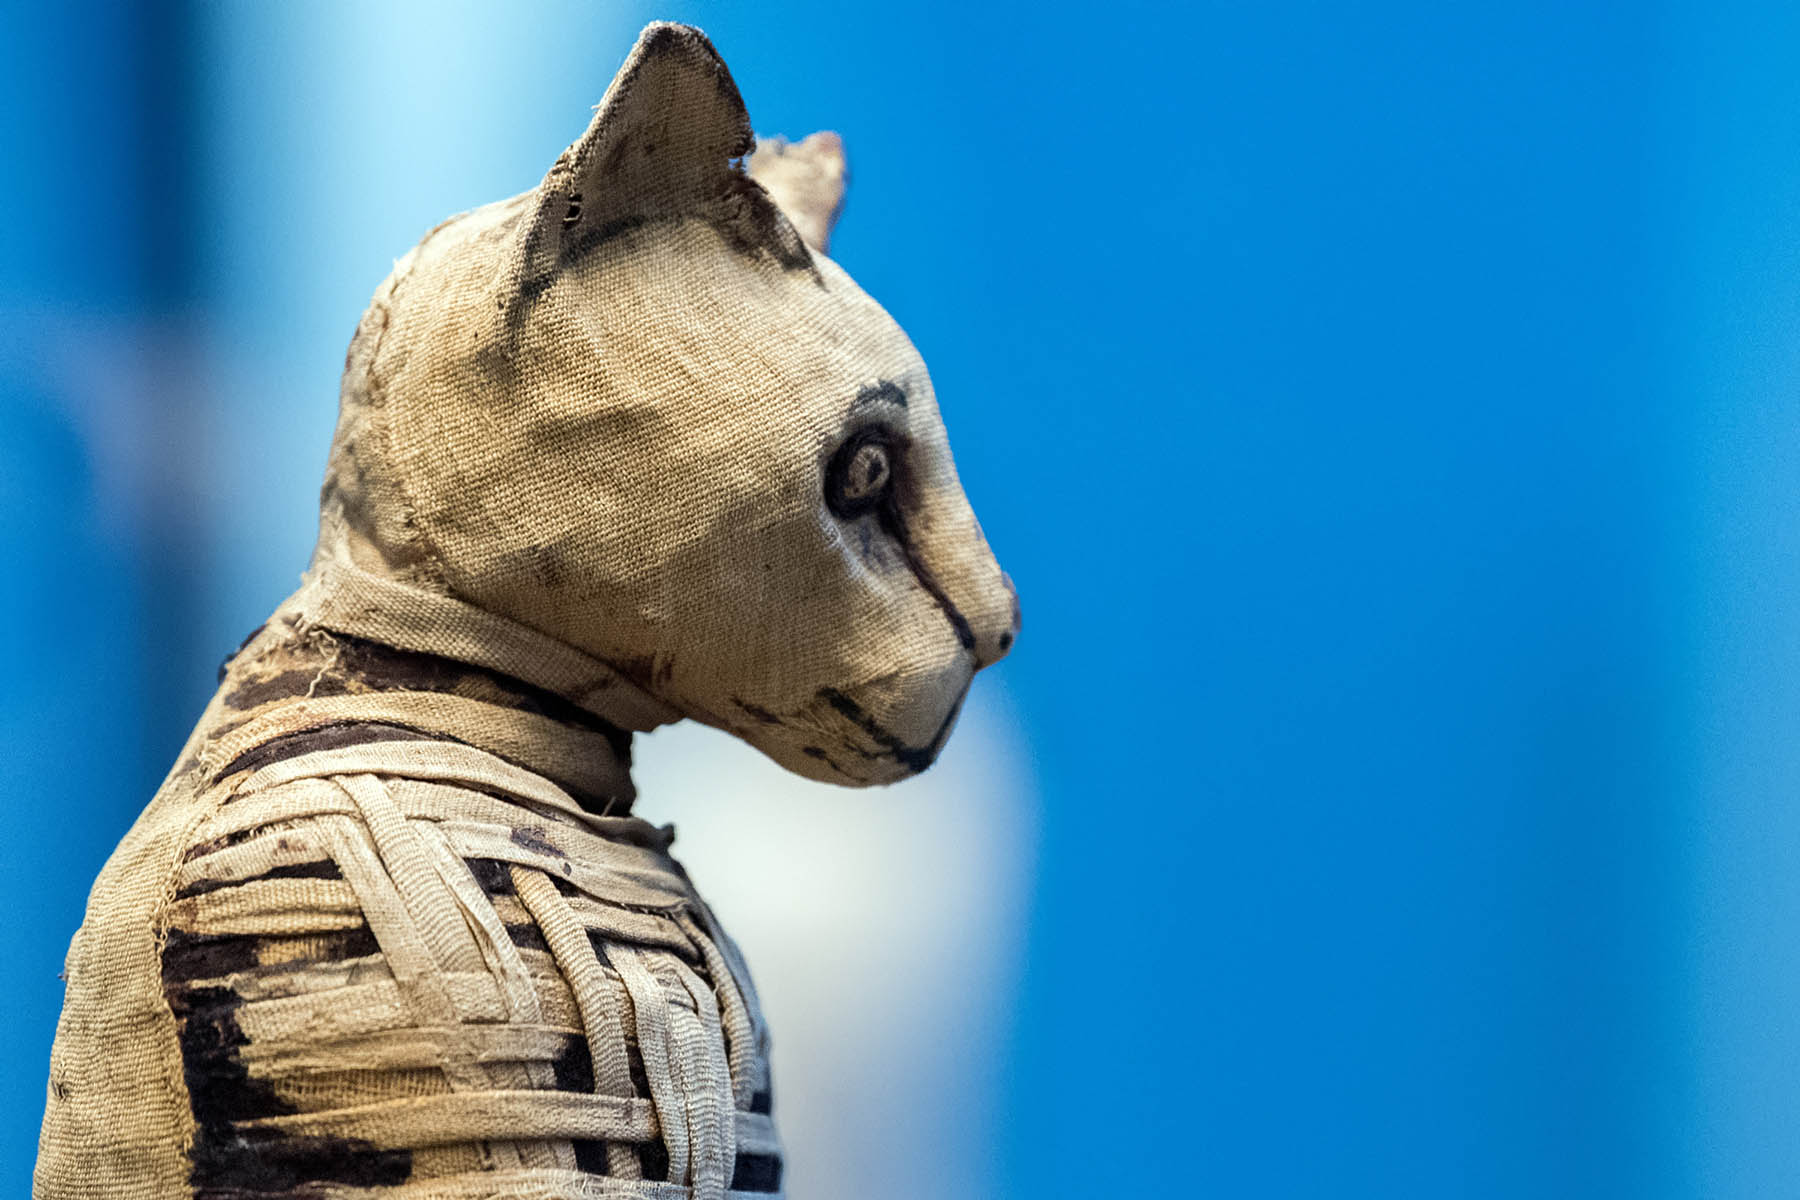 A close-up photo of a mummified cat.